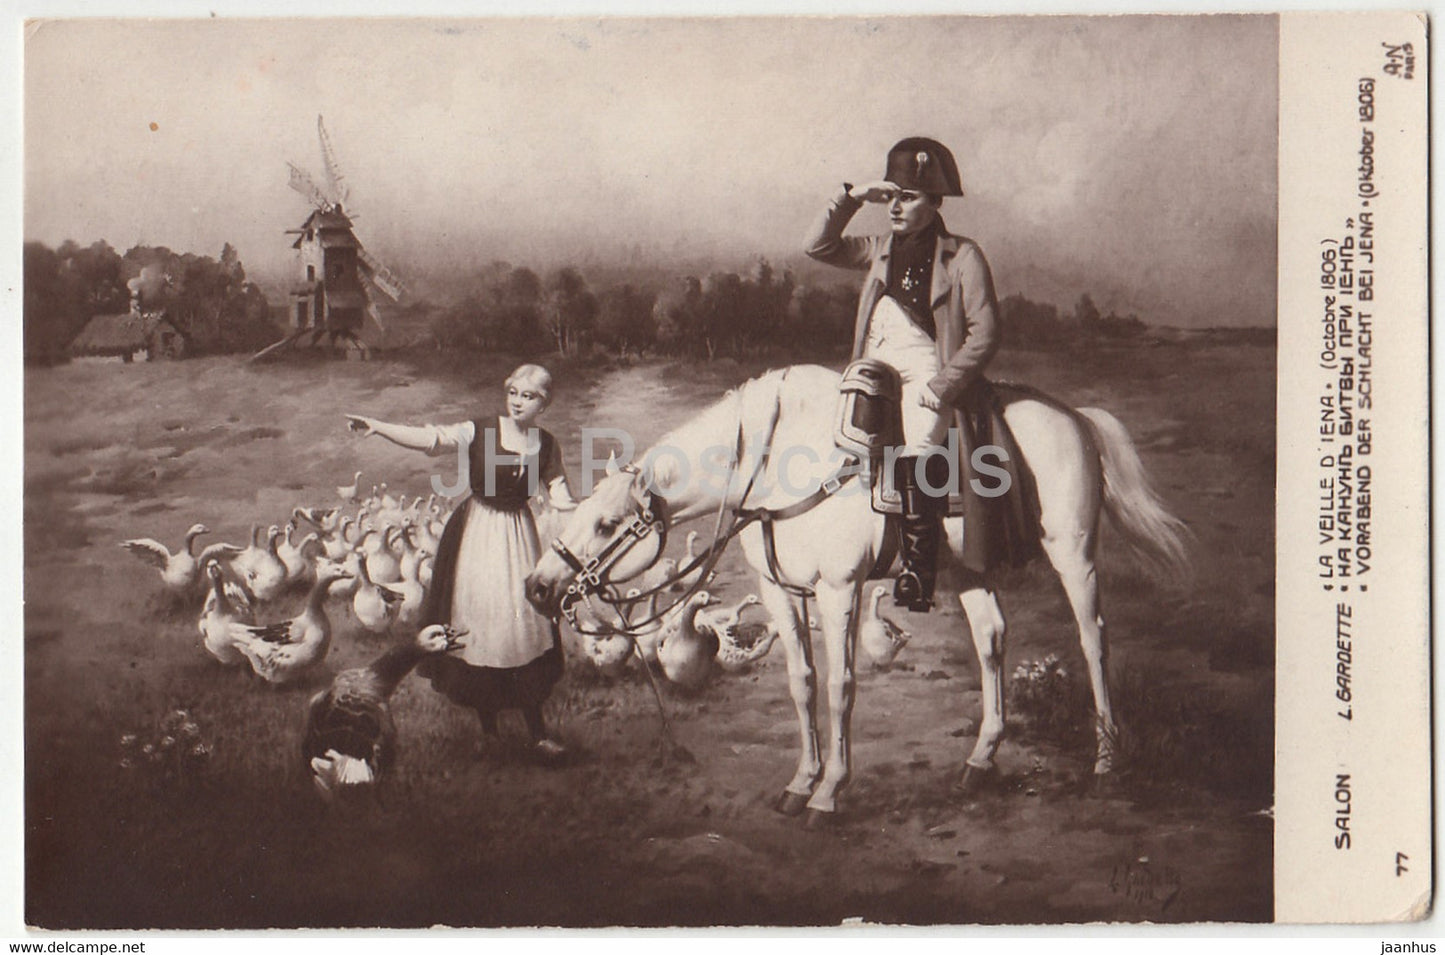 painting by L Gardette - La Veille D'Iena - Napoleon - horse - AN Paris 77 - French art - old postcard - France - unused - JH Postcards